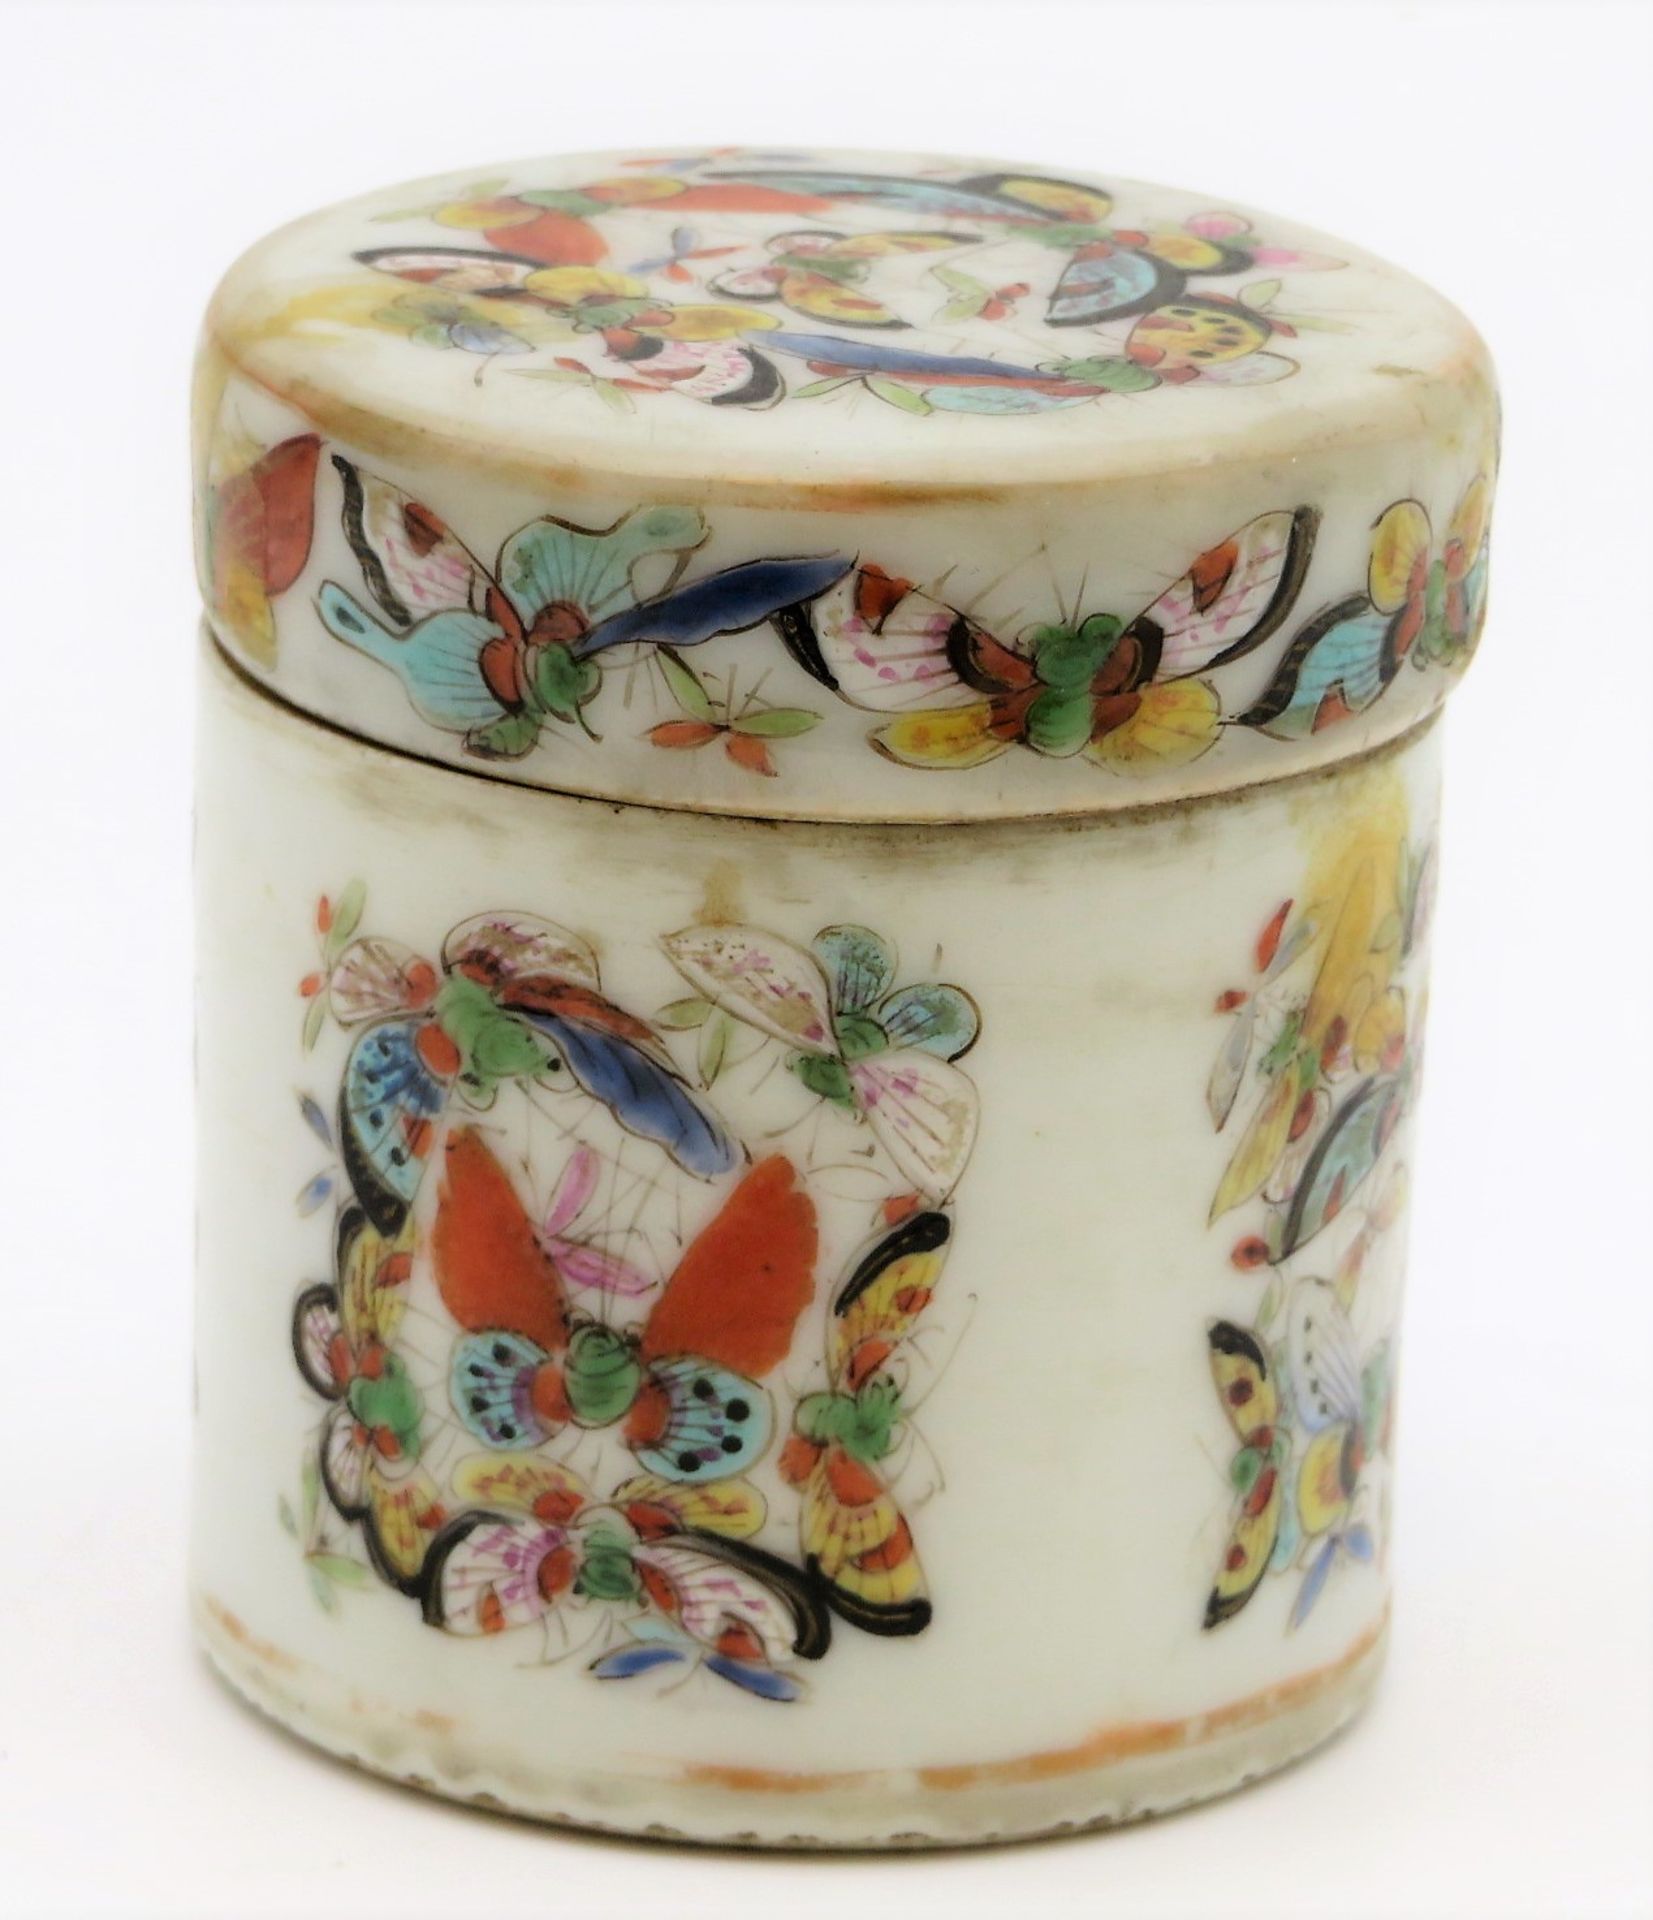 Salbdöschen, China, 19. Jahrhundert, Porzellan mit polychromen Schmetterlingsbemalungen, Deckel mit